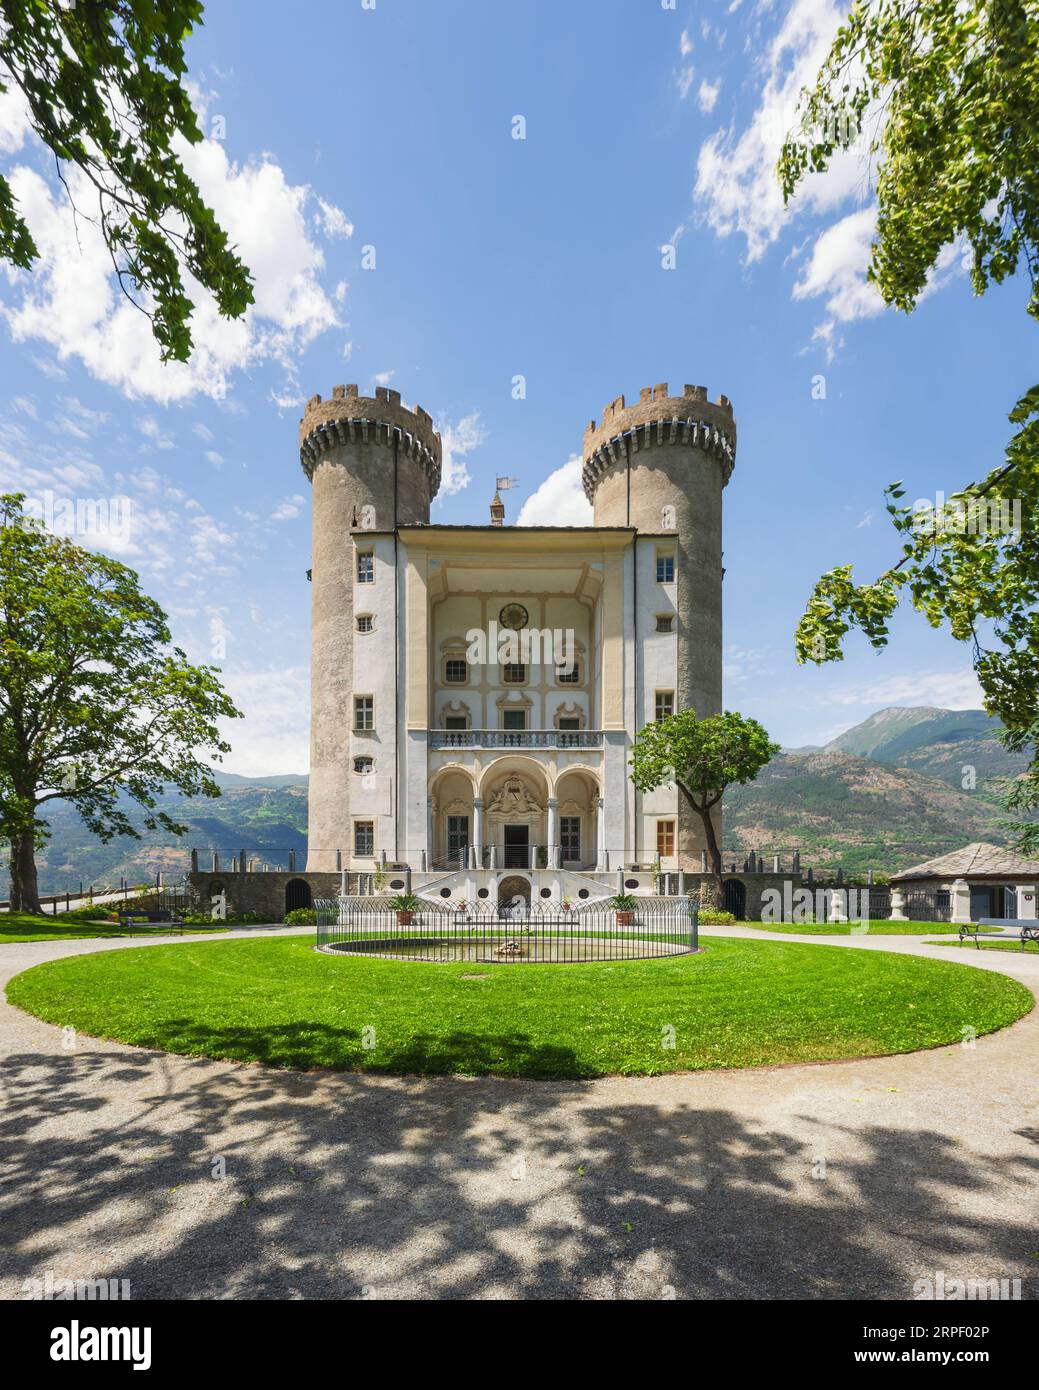 Le château d'Aymavilles et son jardin. Région de la Vallée d'Aoste, Italie Banque D'Images